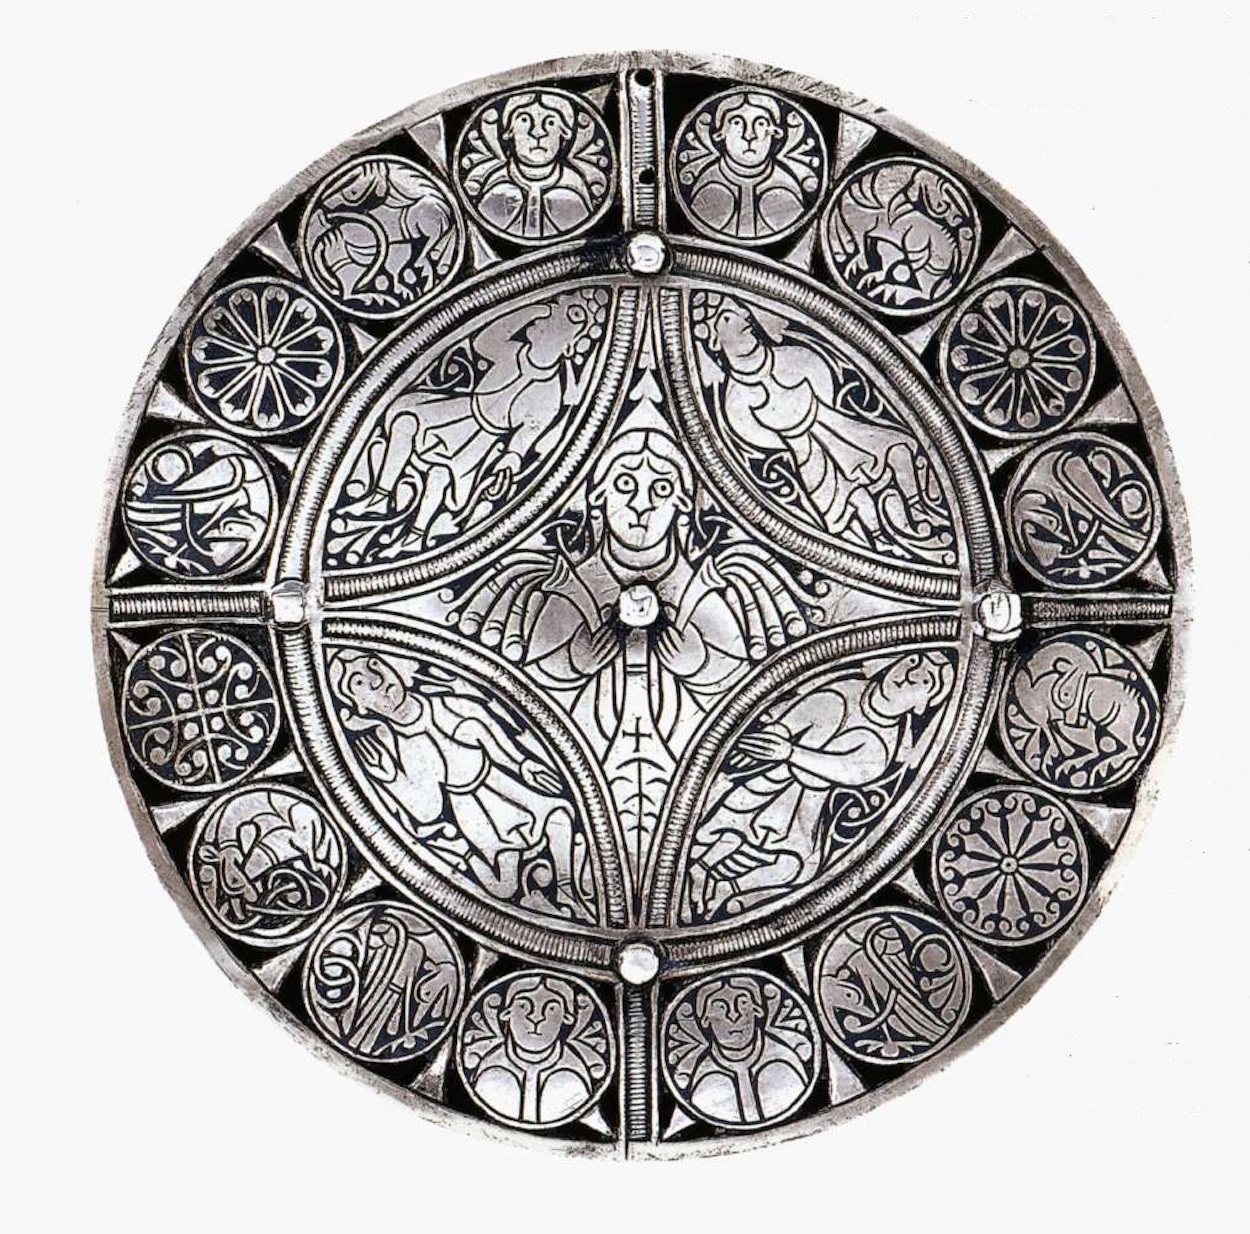 El broche Fuller by Artista anónimo  - finales del siglo IX - 114 mm (dia.) British Museum